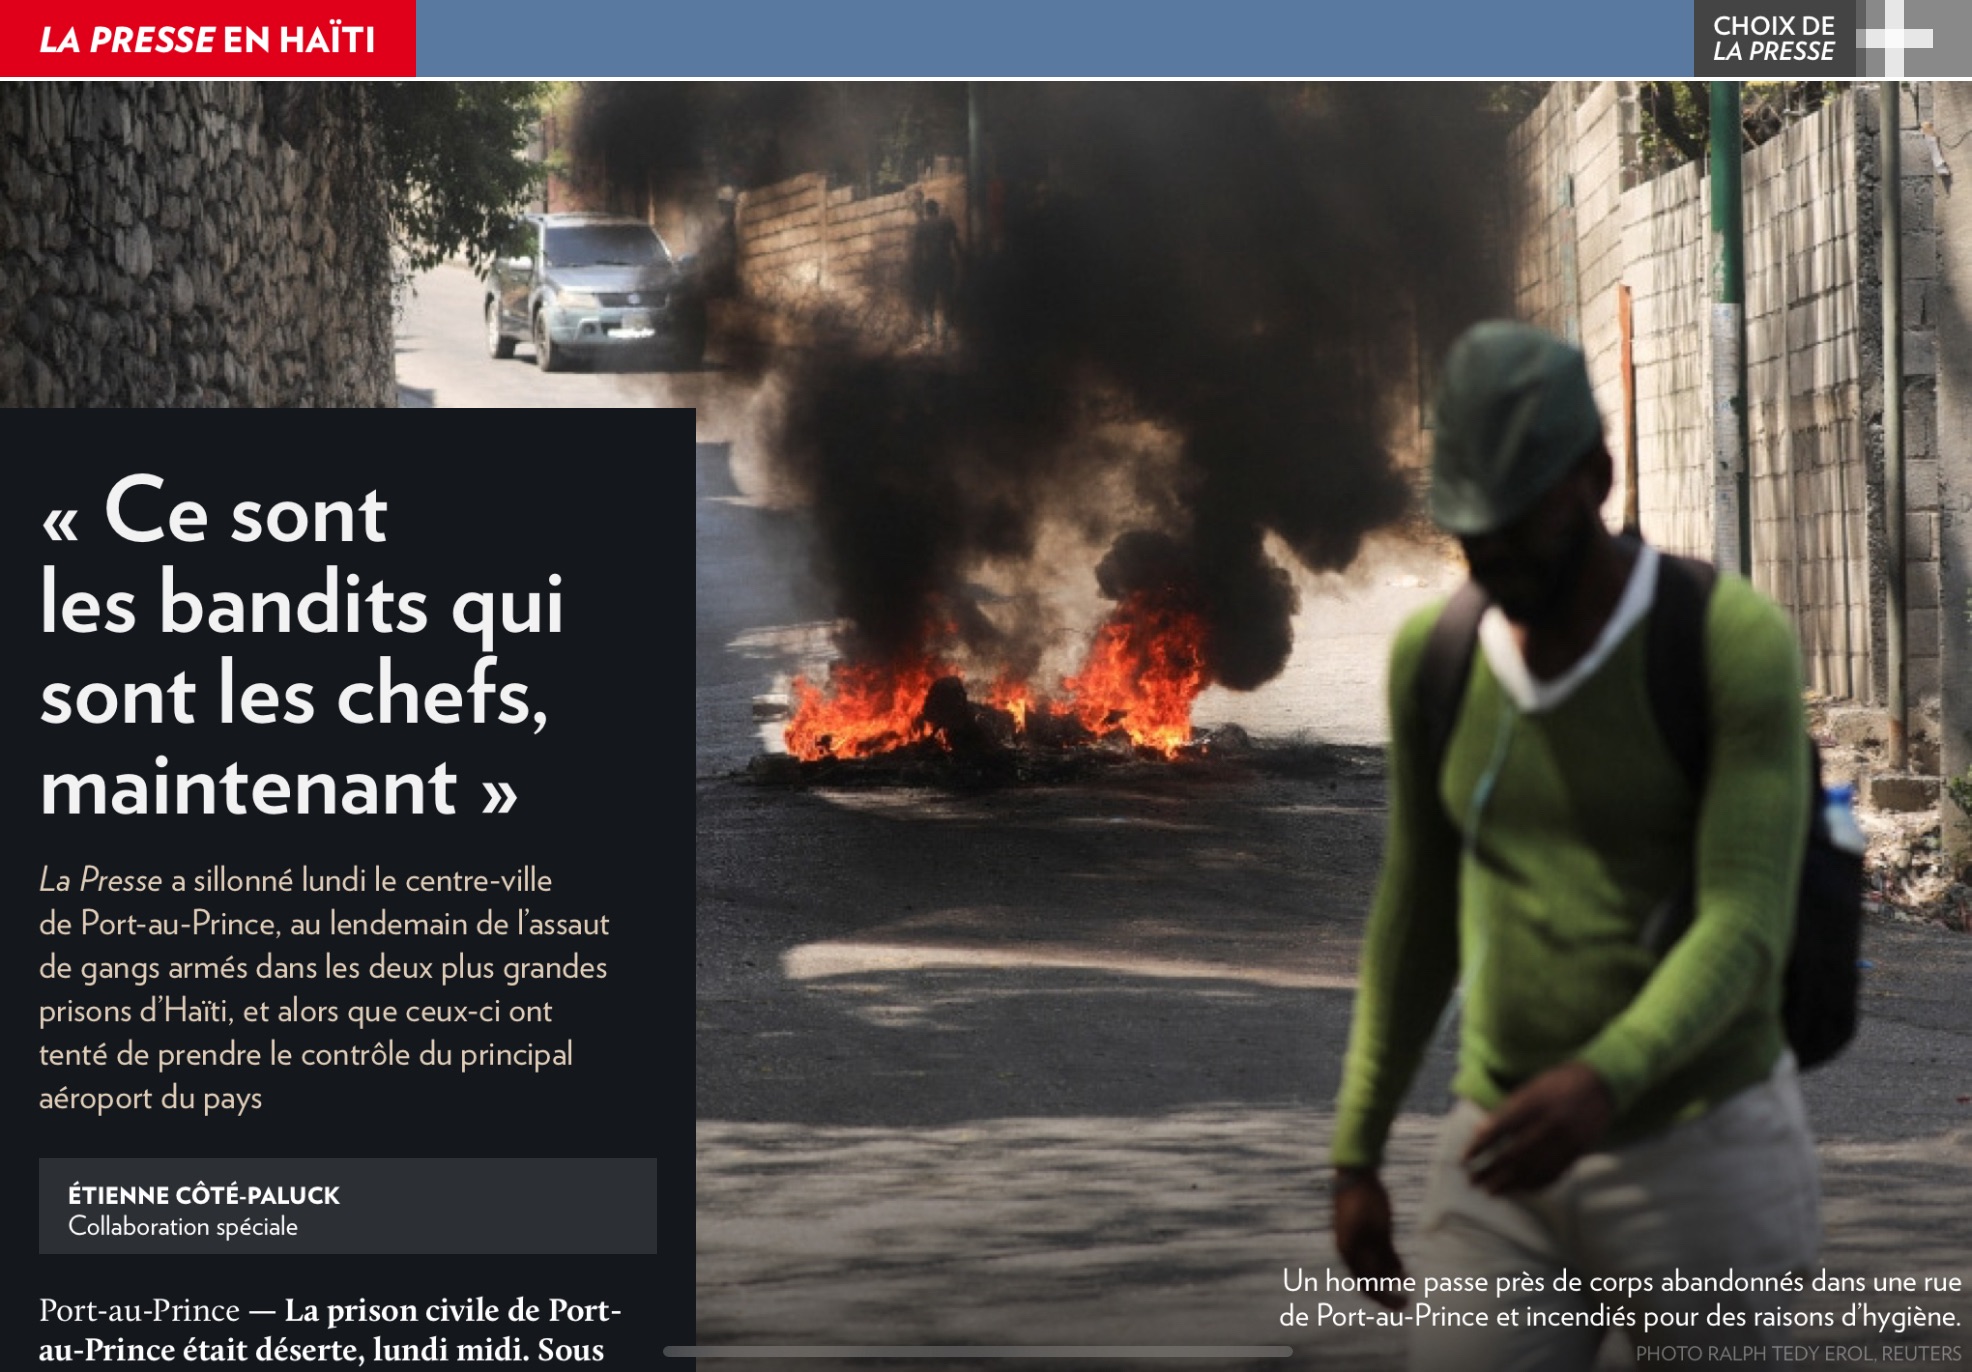 La Presse en Haïti – « Ce sont les bandits qui sont les chefs, maintenant »